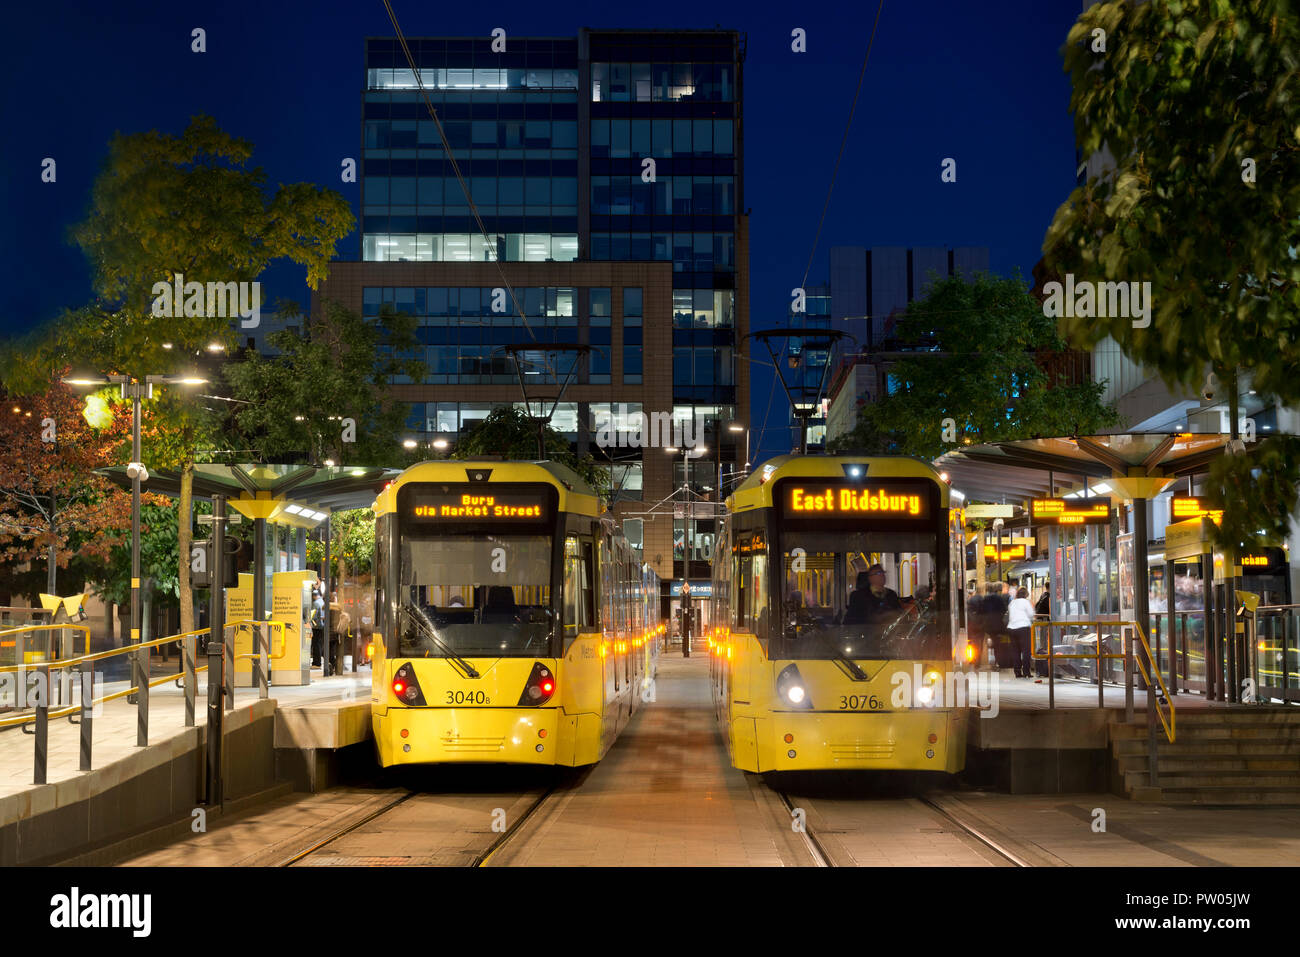 Zwei Metrolink Tram kommen am St. Peter's Square Stop in der Nacht im Stadtzentrum von Manchester, UK. Stockfoto